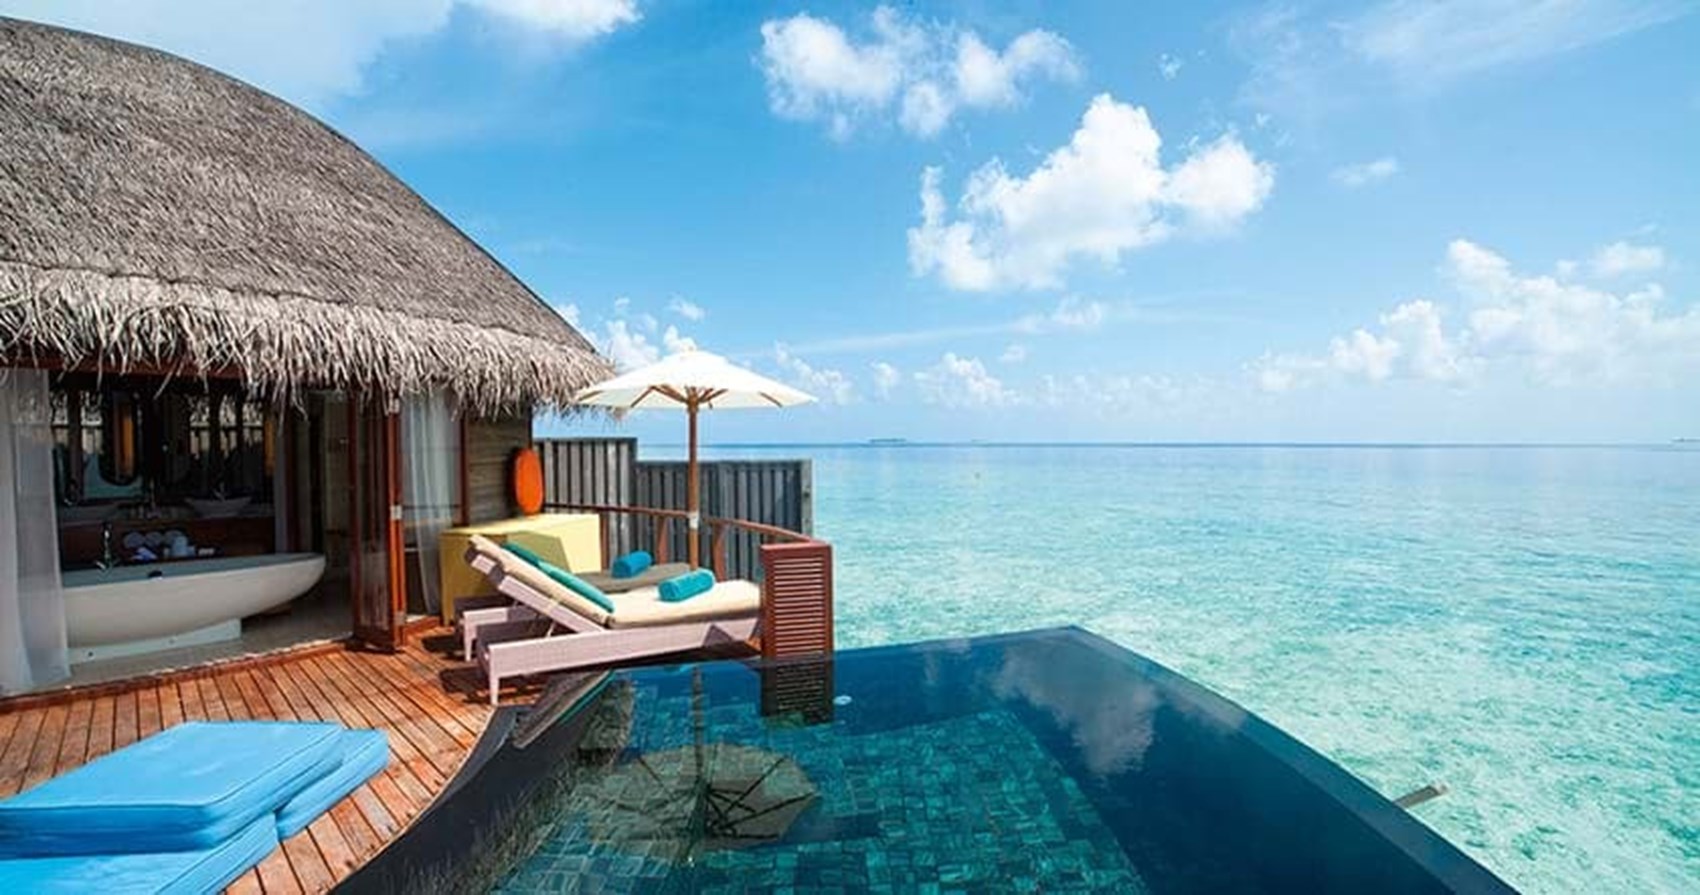 افضل الفنادق المتميزه في السعر في المالديف (7)